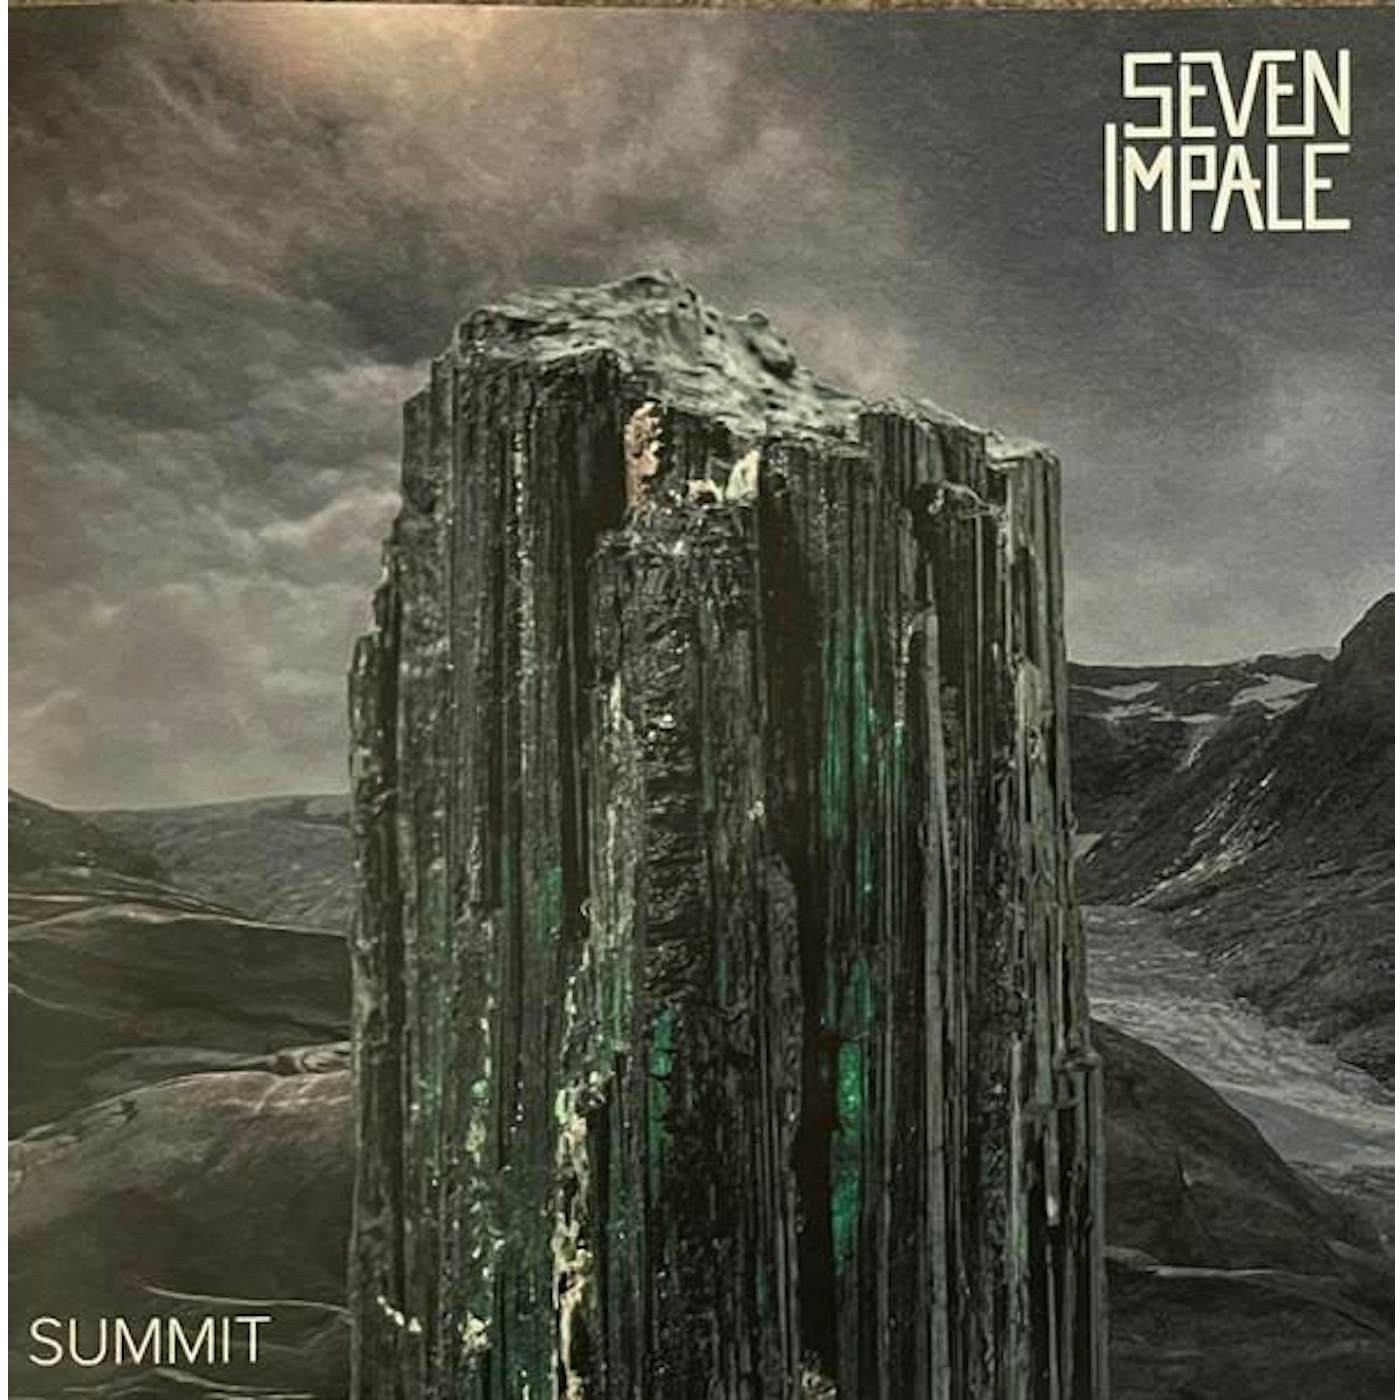 Seven Impale SUMMIT CD